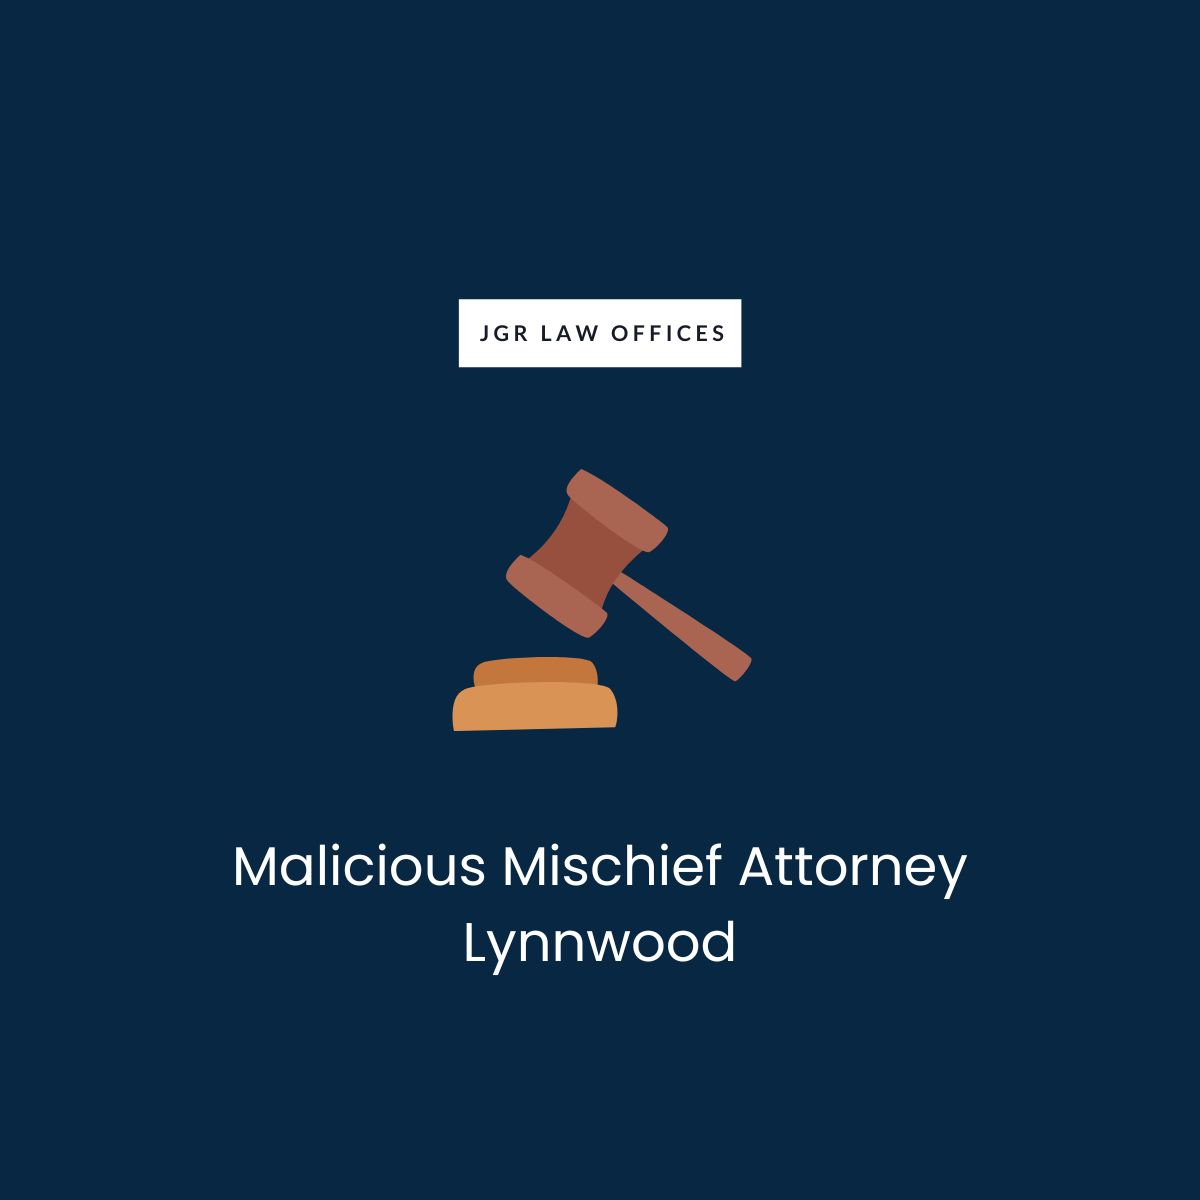 Malicious Mischief Attorney Lynnwood